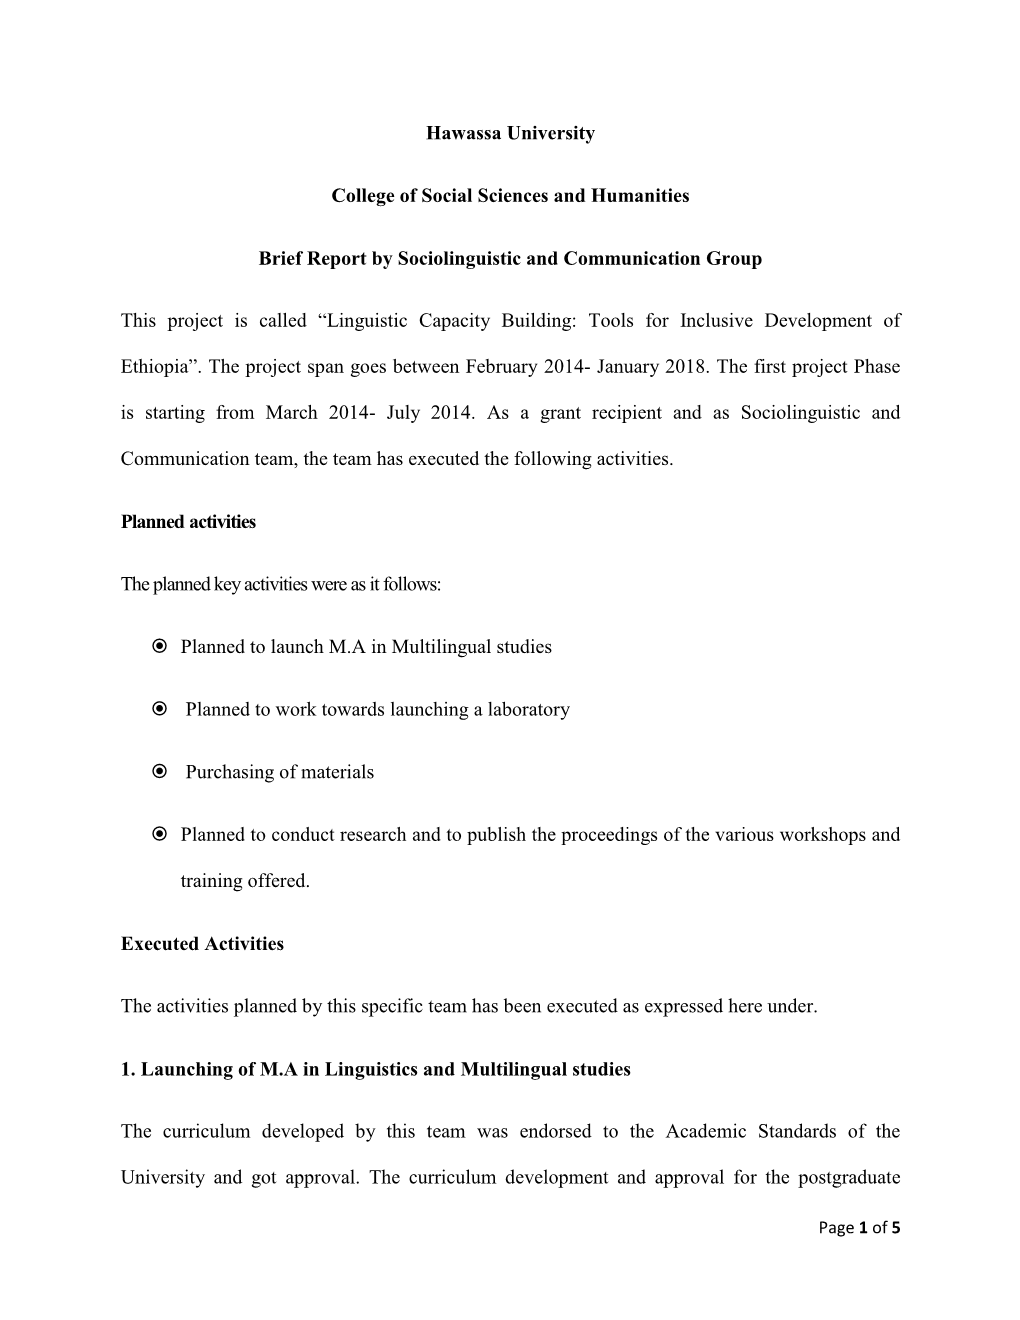 hawassa university mba thesis pdf